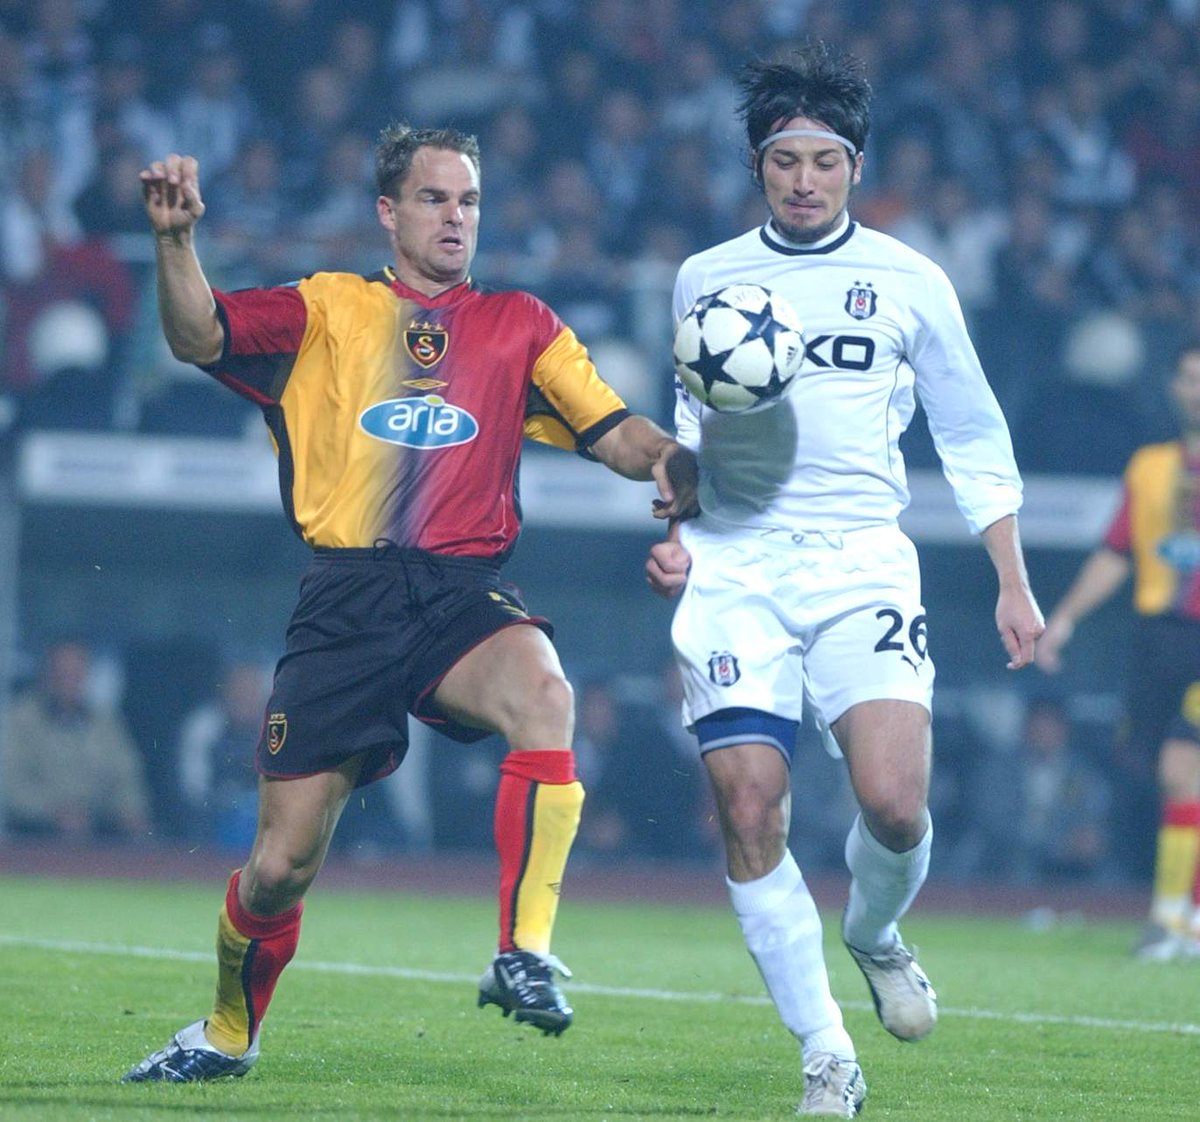 🟡🔴 Galatasaray 2003/04 İç Saha ⚫️ Sarı-kırmızı parçaların tüm bölgelerde siyahla ayrıldığı bir tam parçalı.